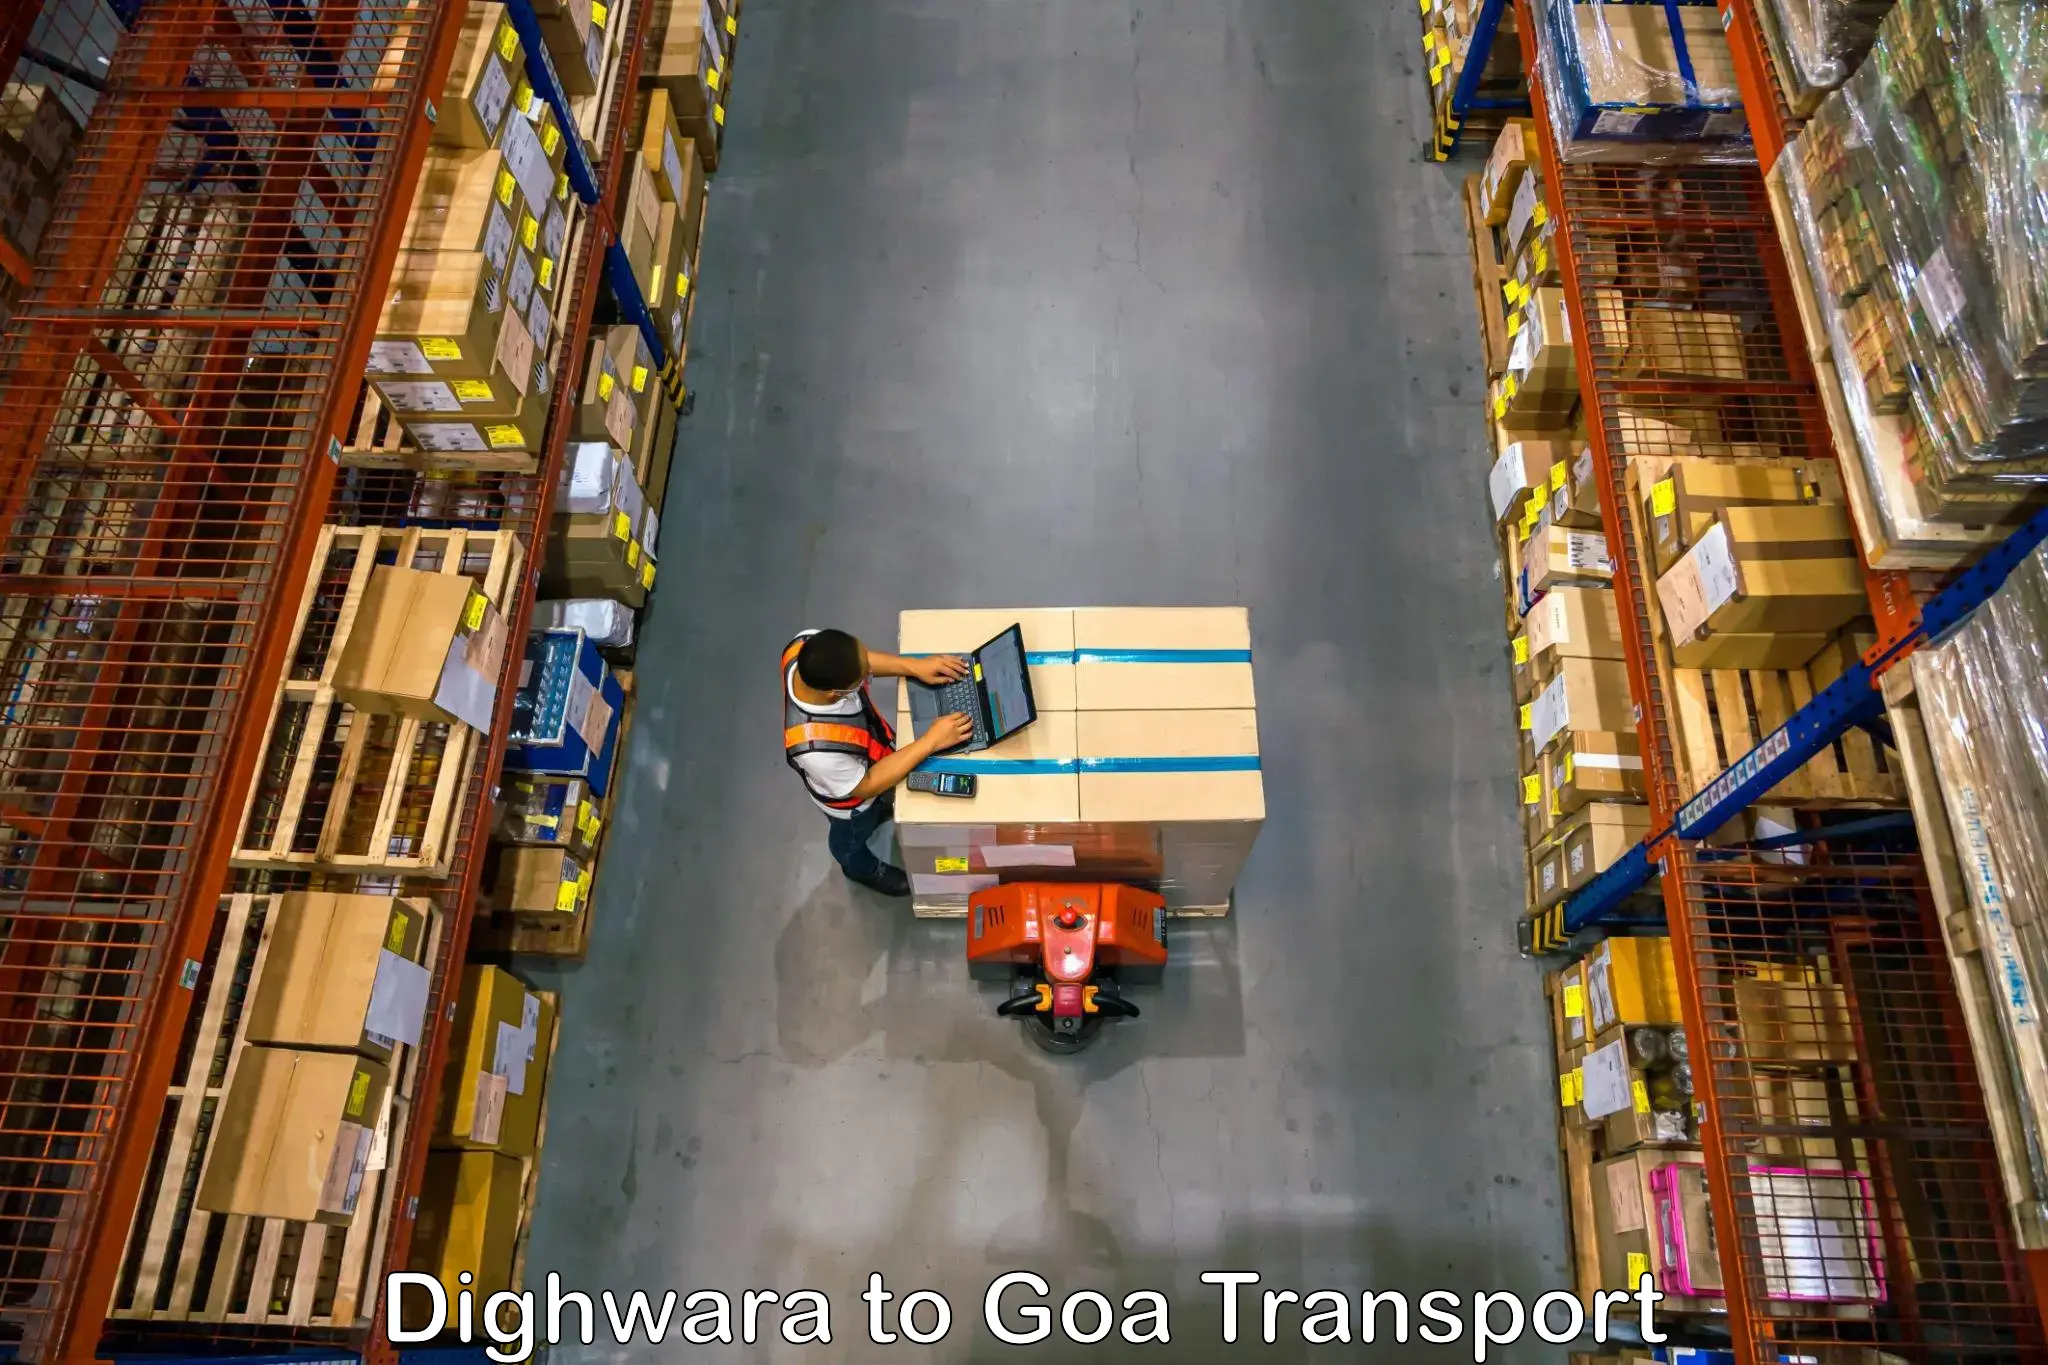 Daily parcel service transport Dighwara to Mormugao Port